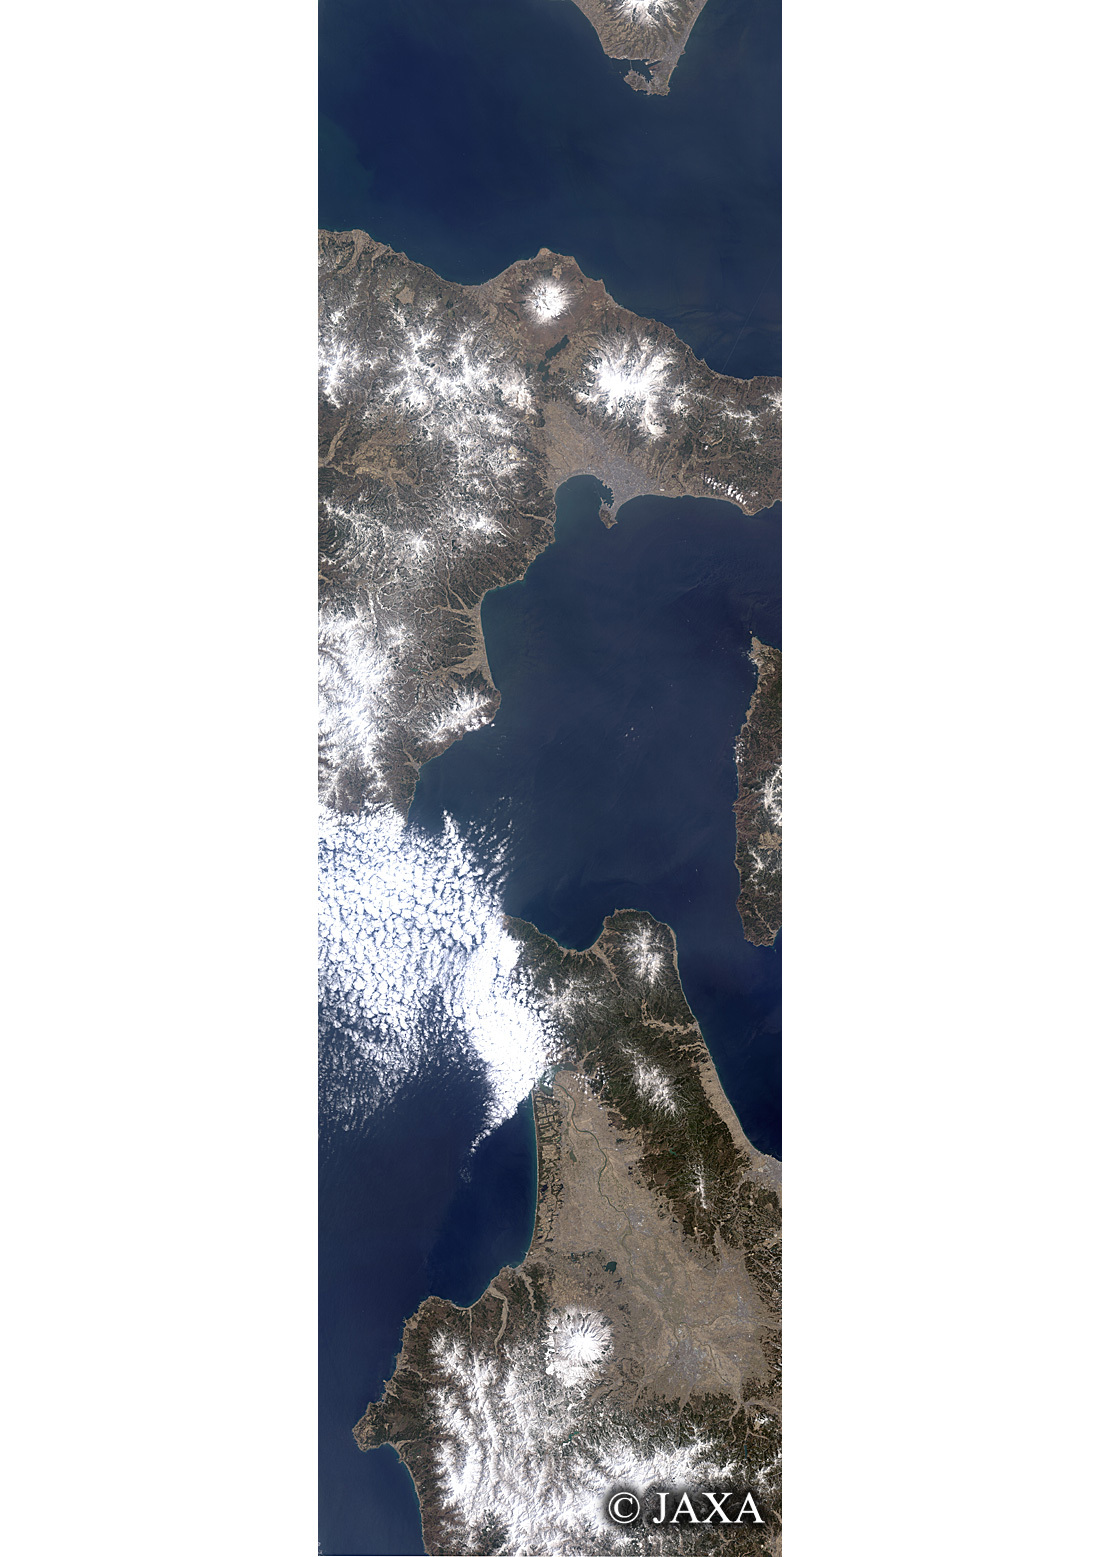 だいちから見た日本の都市 残雪の津軽海峡:衛星画像